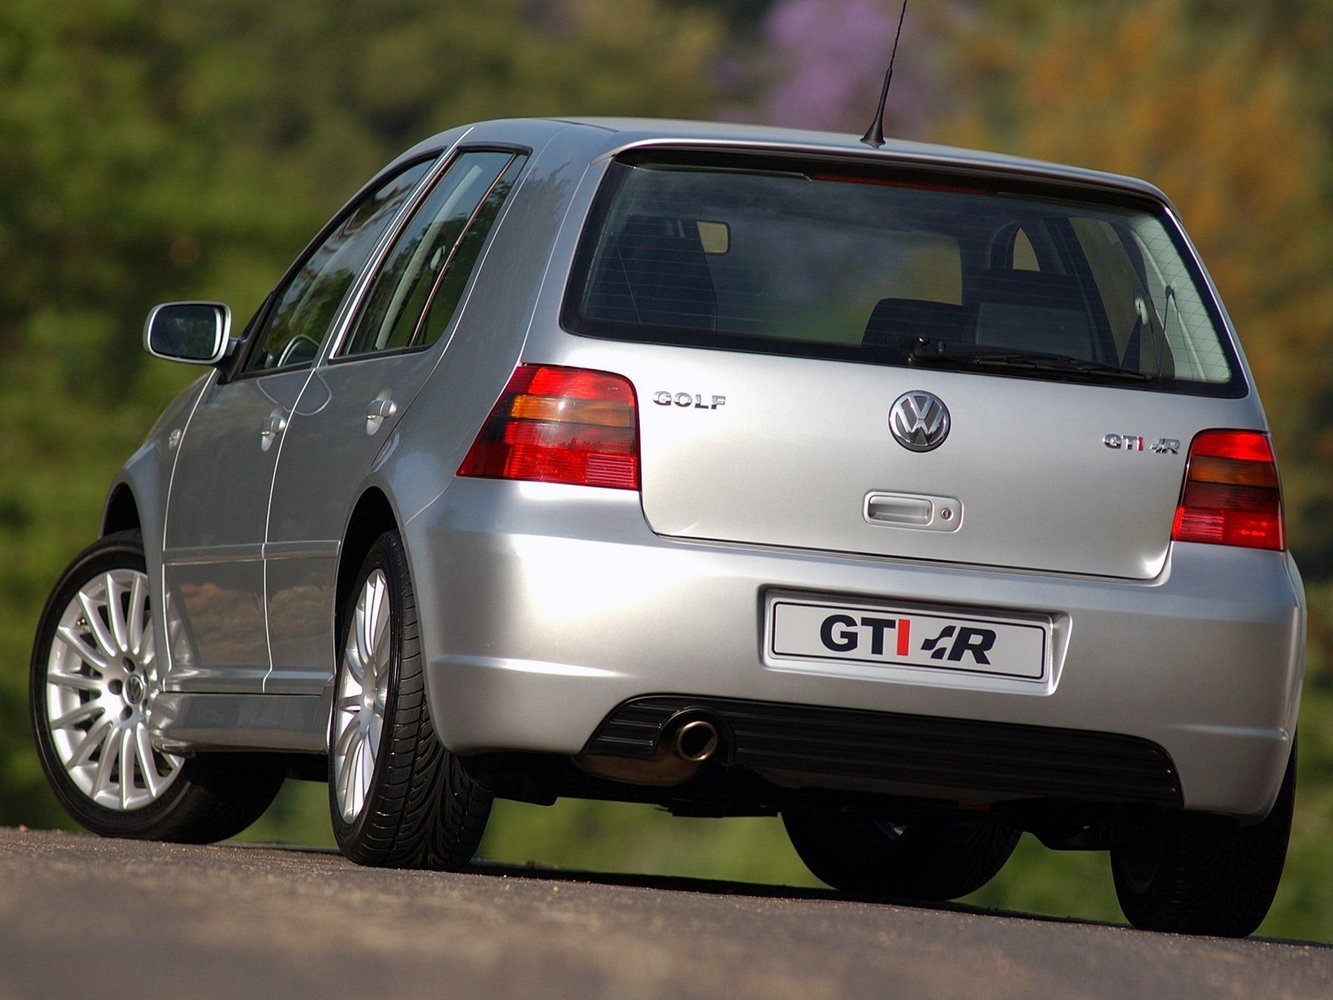 хэтчбек 5 дв. Volkswagen Golf GTI 1998 - 2003г выпуска модификация 1.8 MT (180 л.с.)